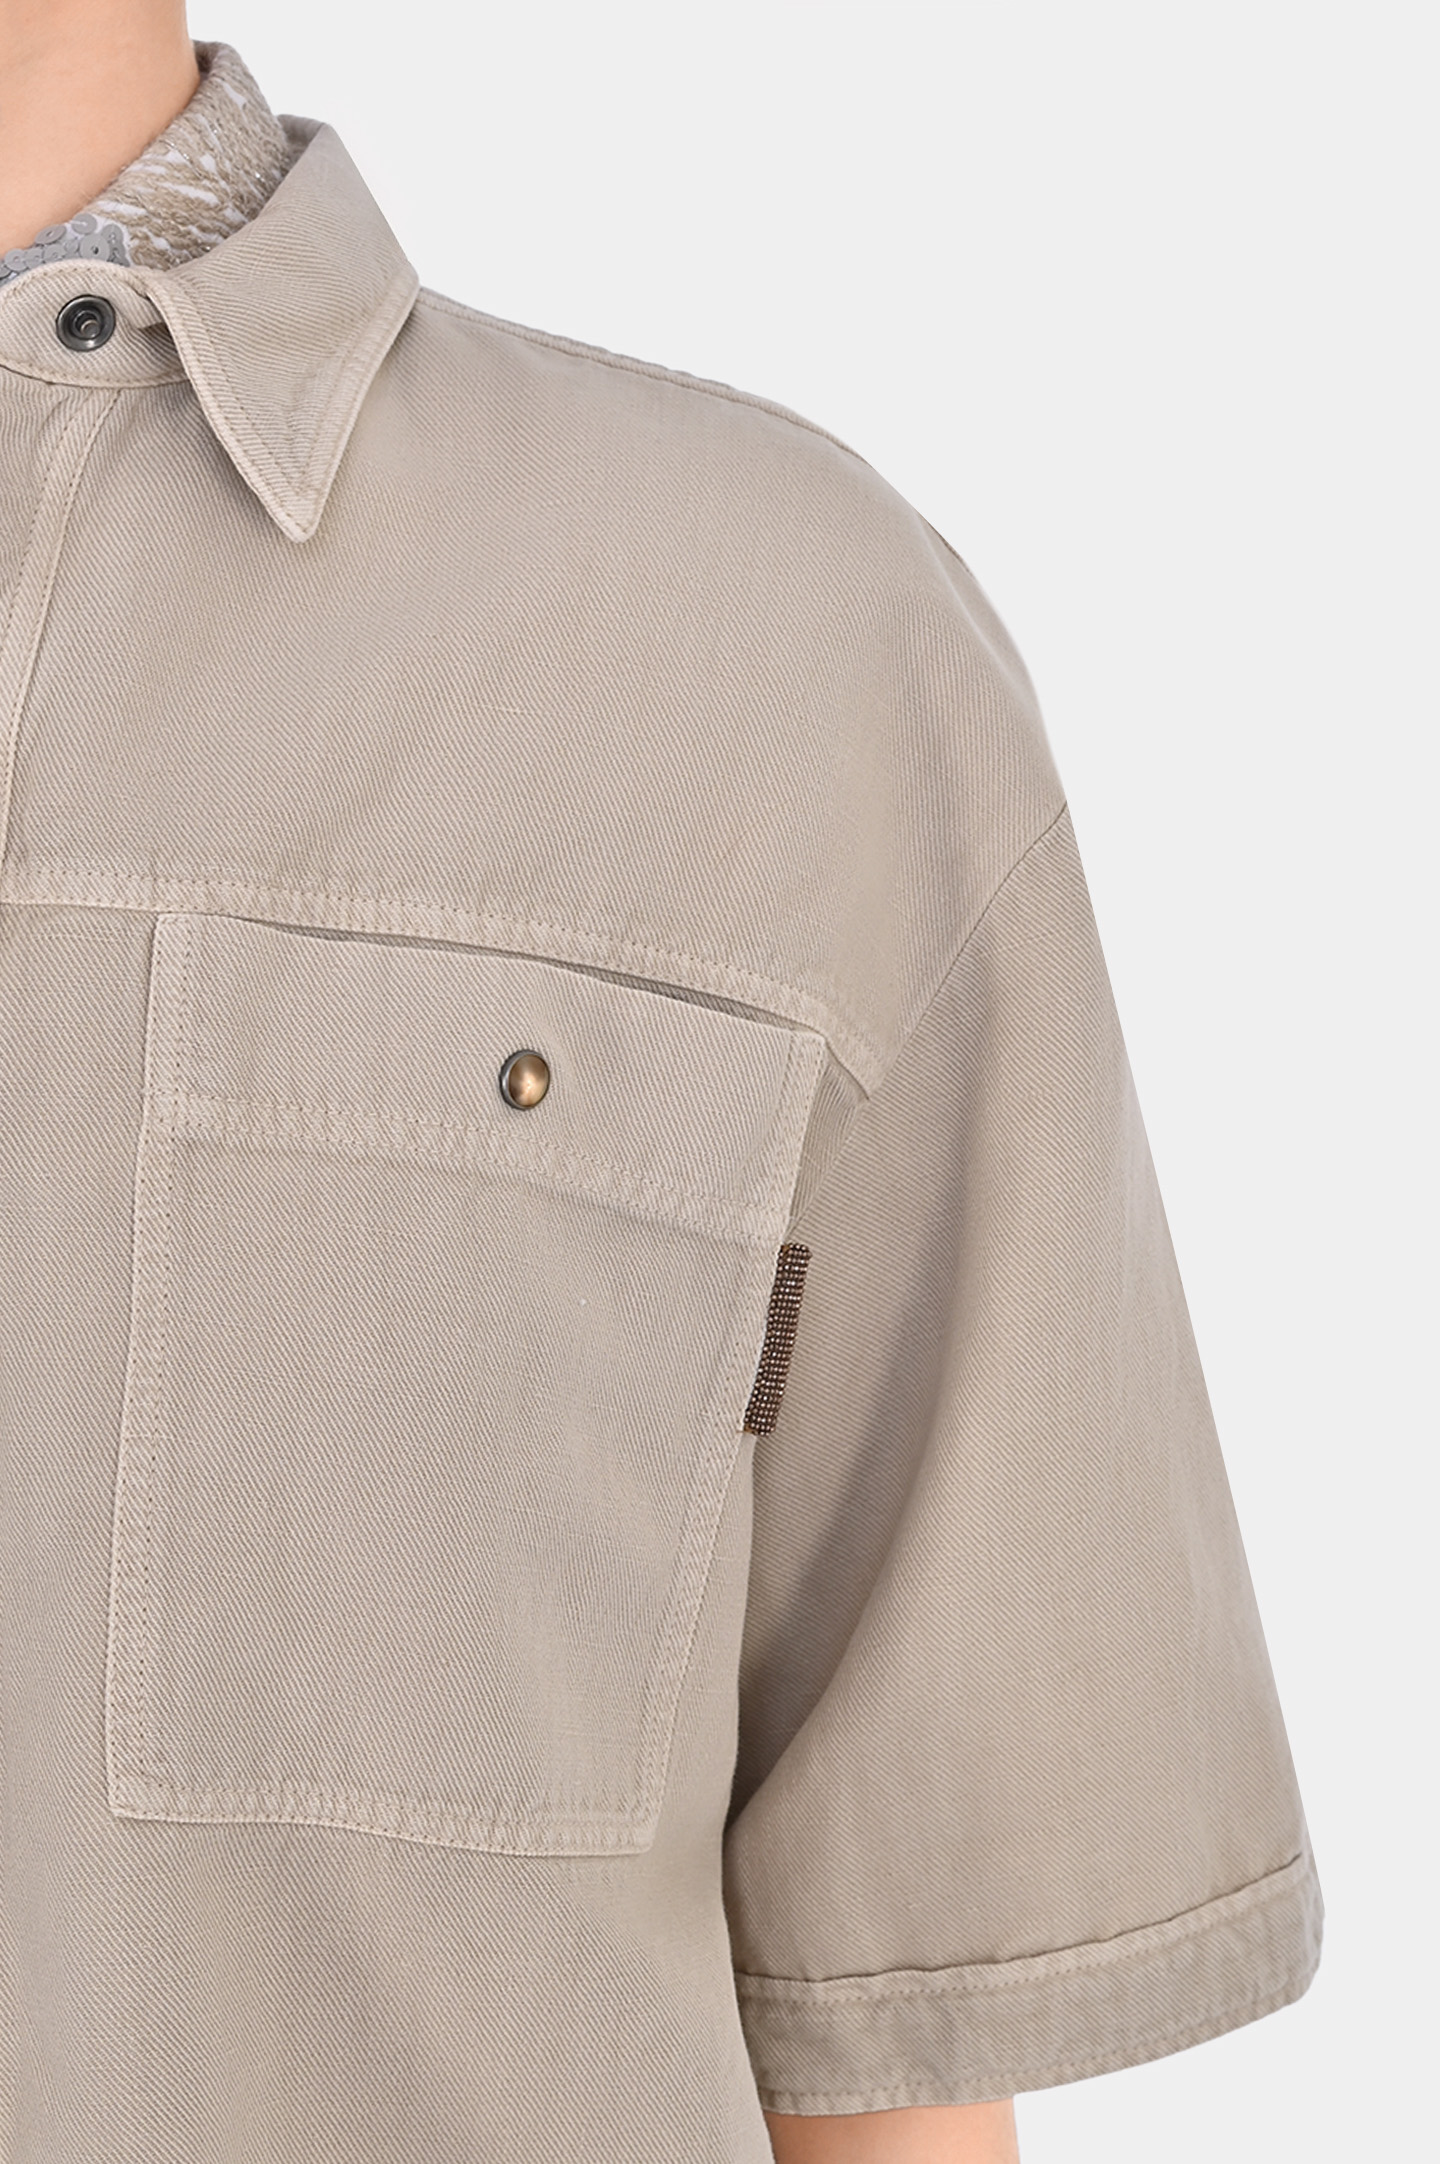 Джинсовая блуза с карманами свободного кроя BRUNELLO  CUCINELLI ML996MH636, цвет: Светло-бежевый, Женский